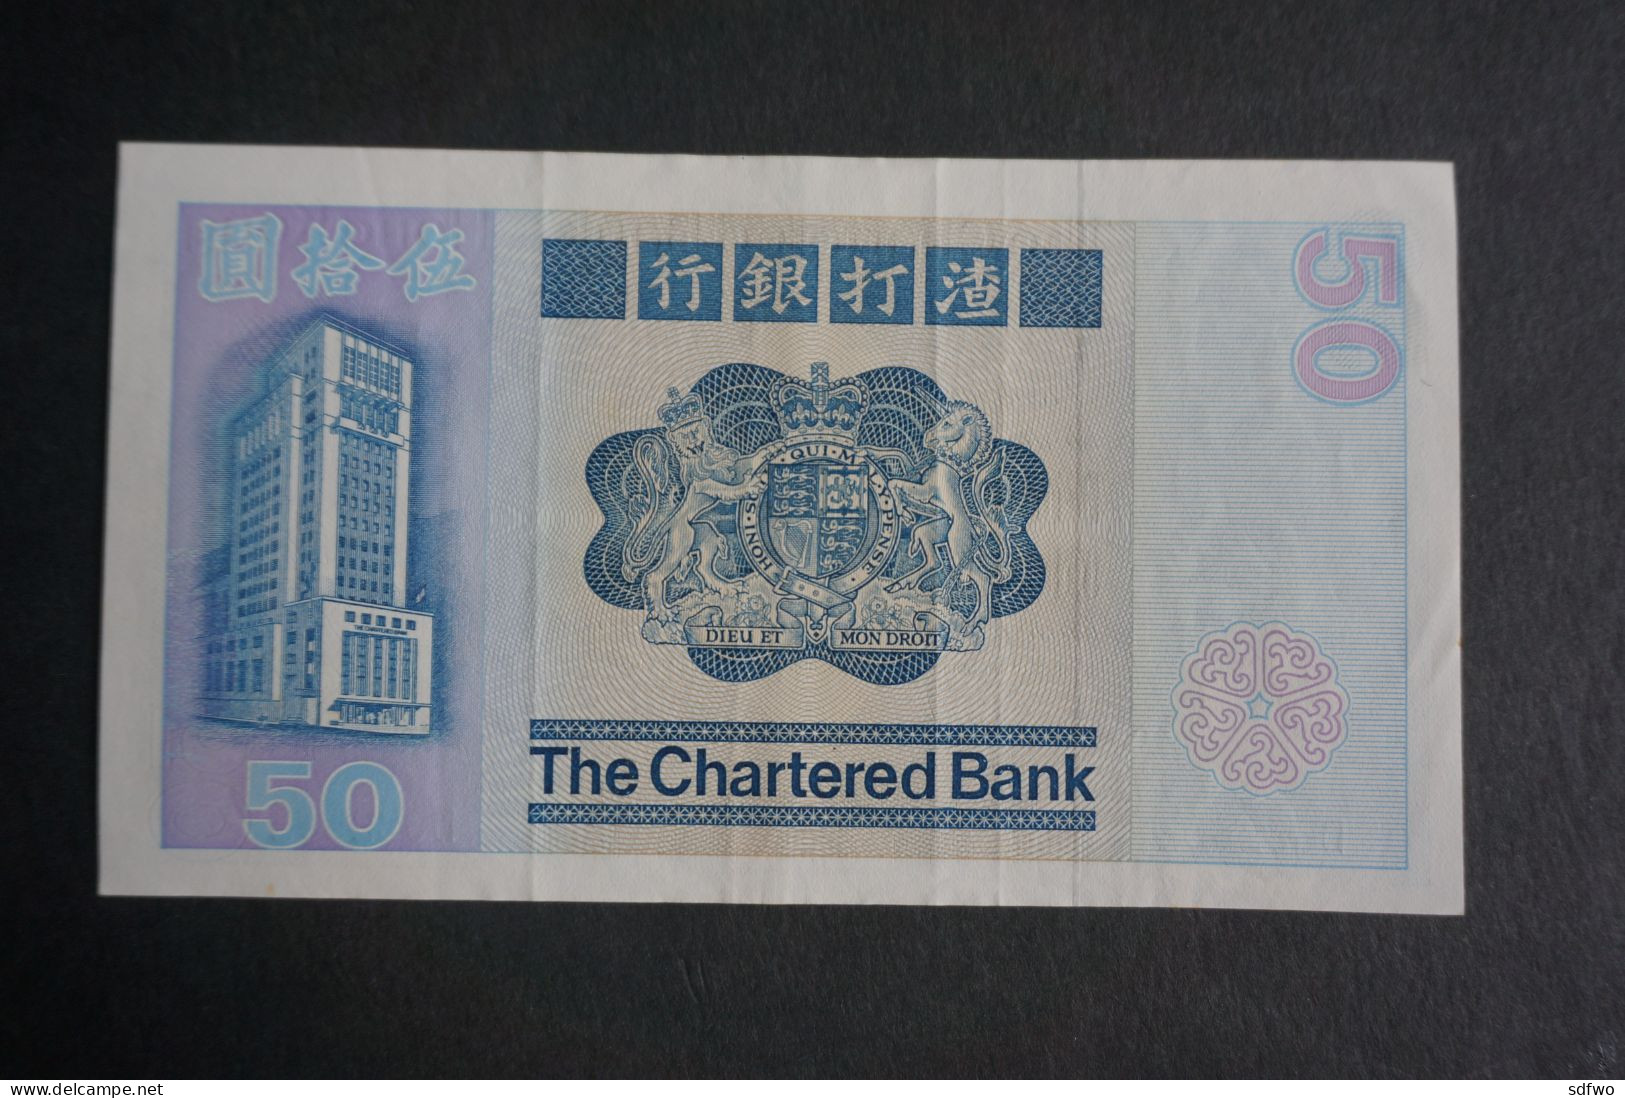 (M) 1982 HONG KONG OLD ISSUE - THE CHARTERED BANK 50 DOLLARS ($50) #D682632 - Hong Kong